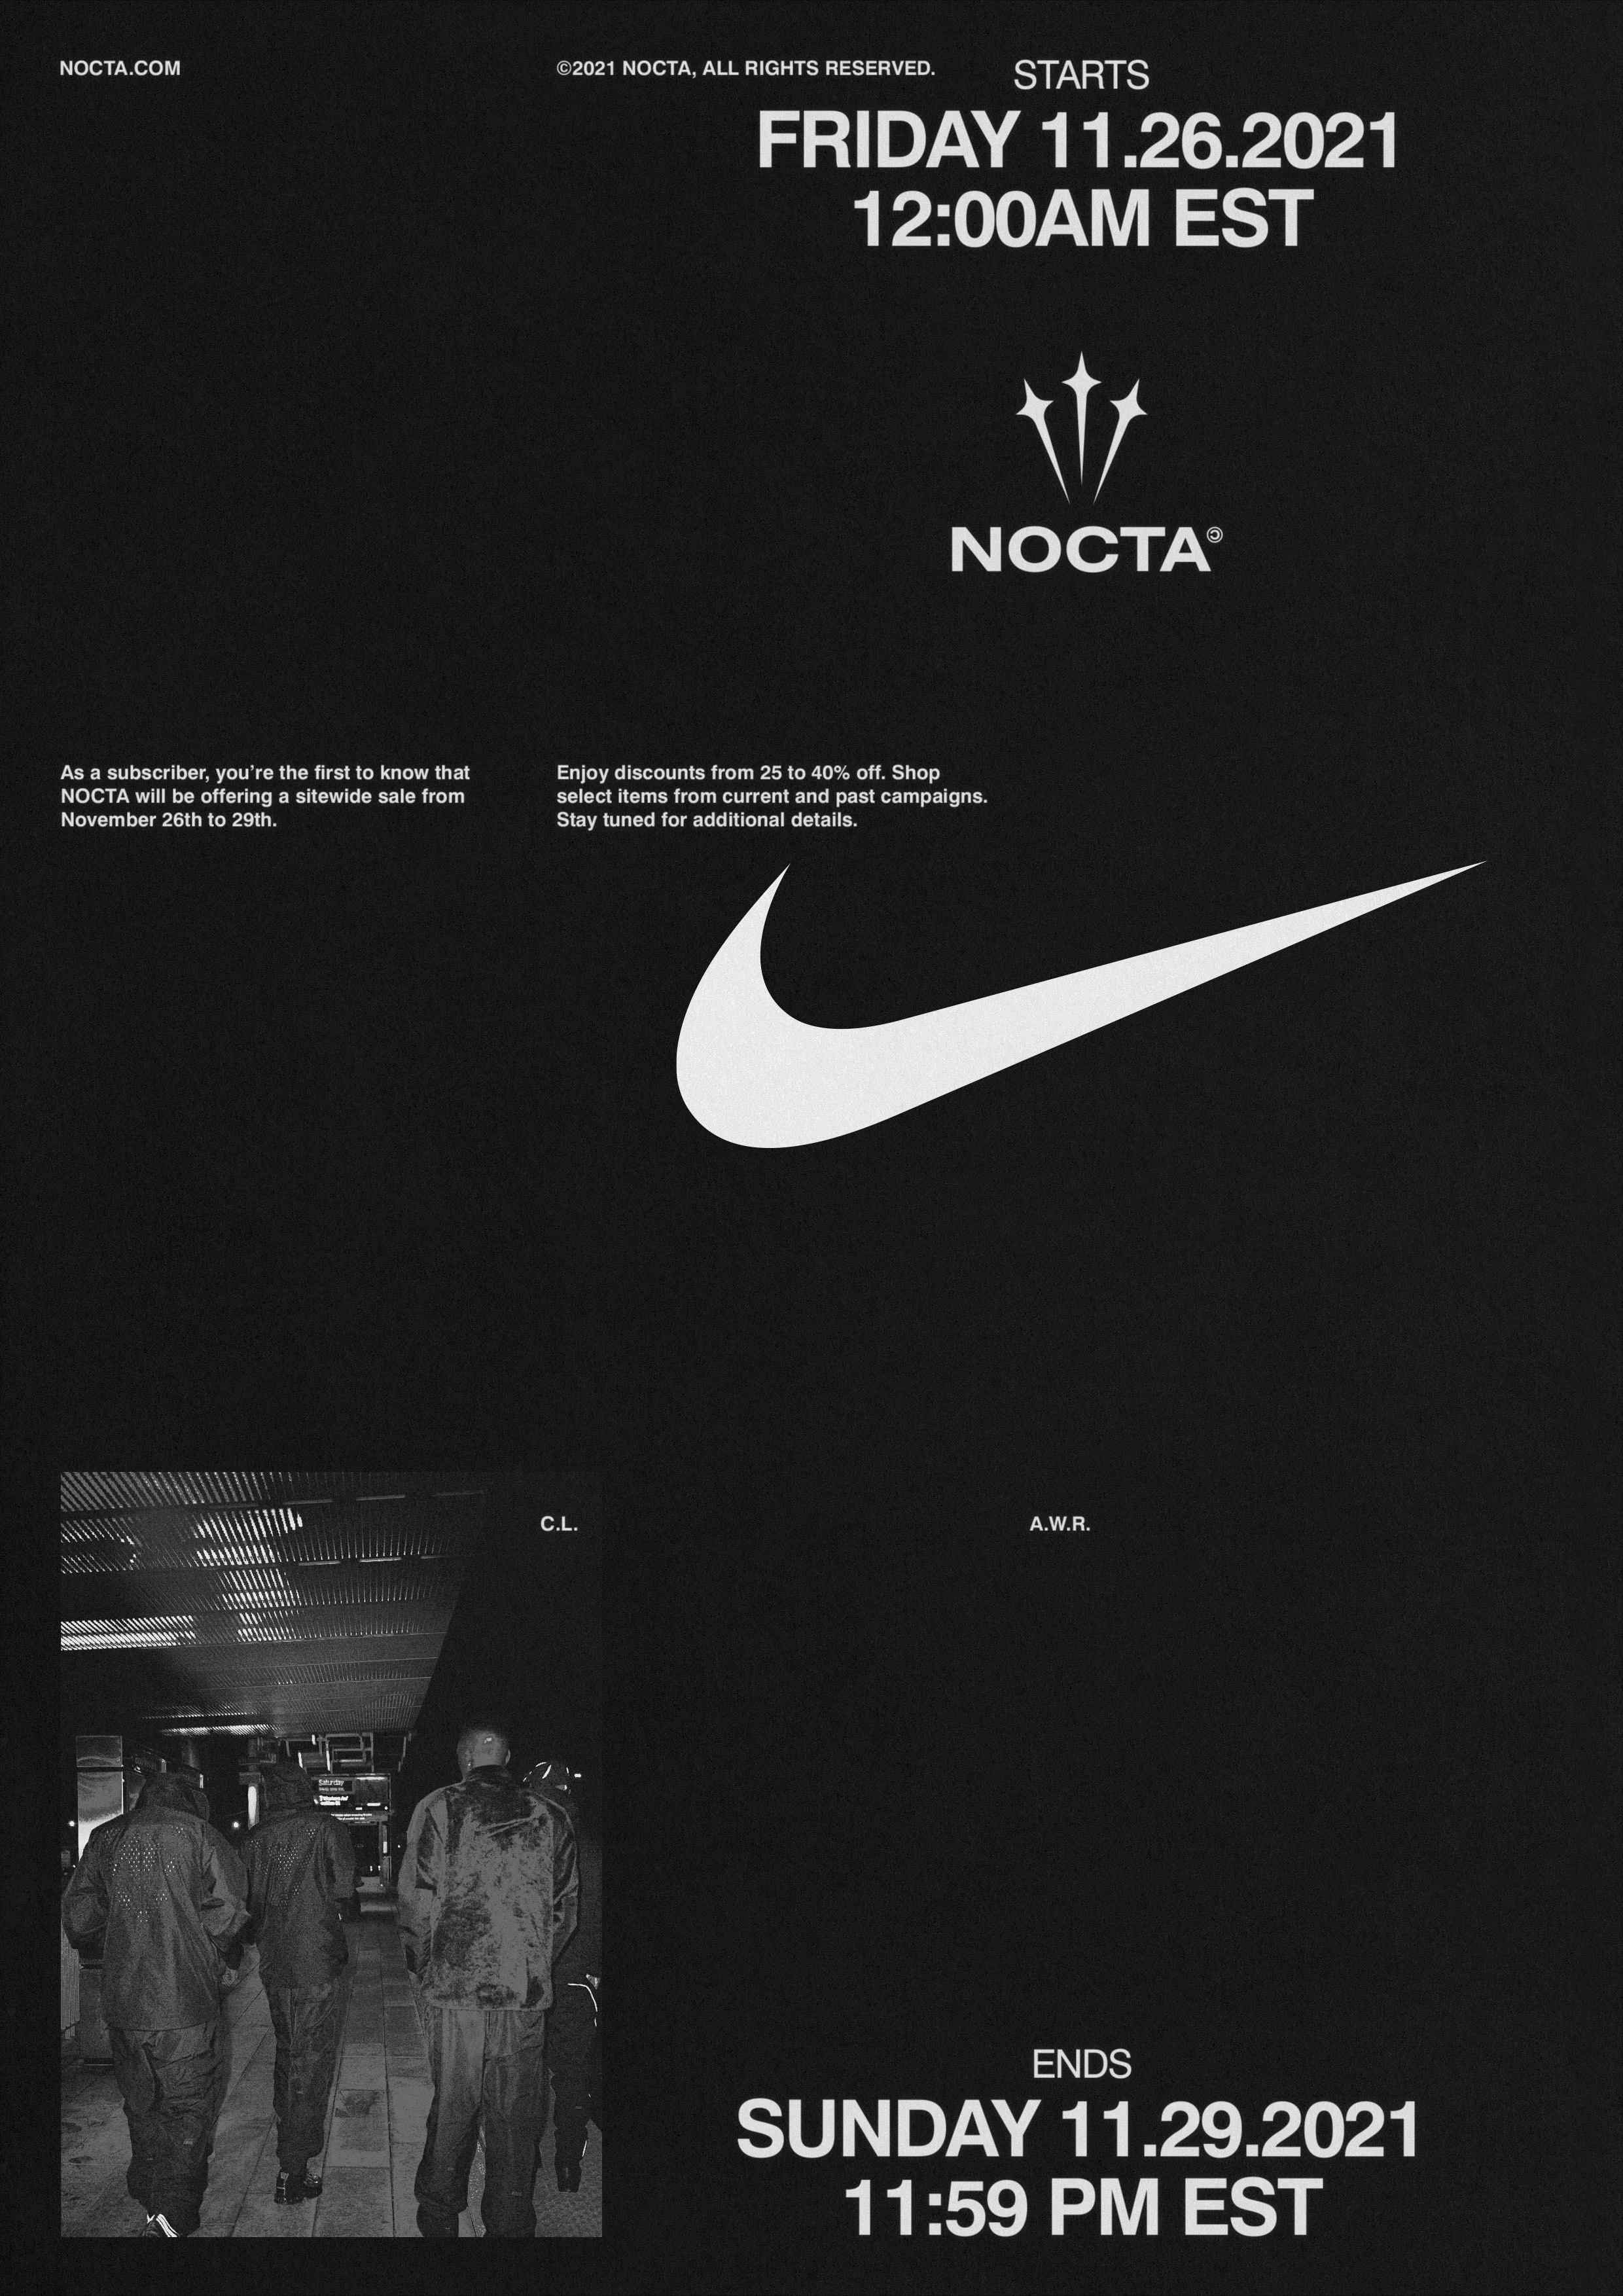 NOCTA Design, Treatment & More Brand Collateral